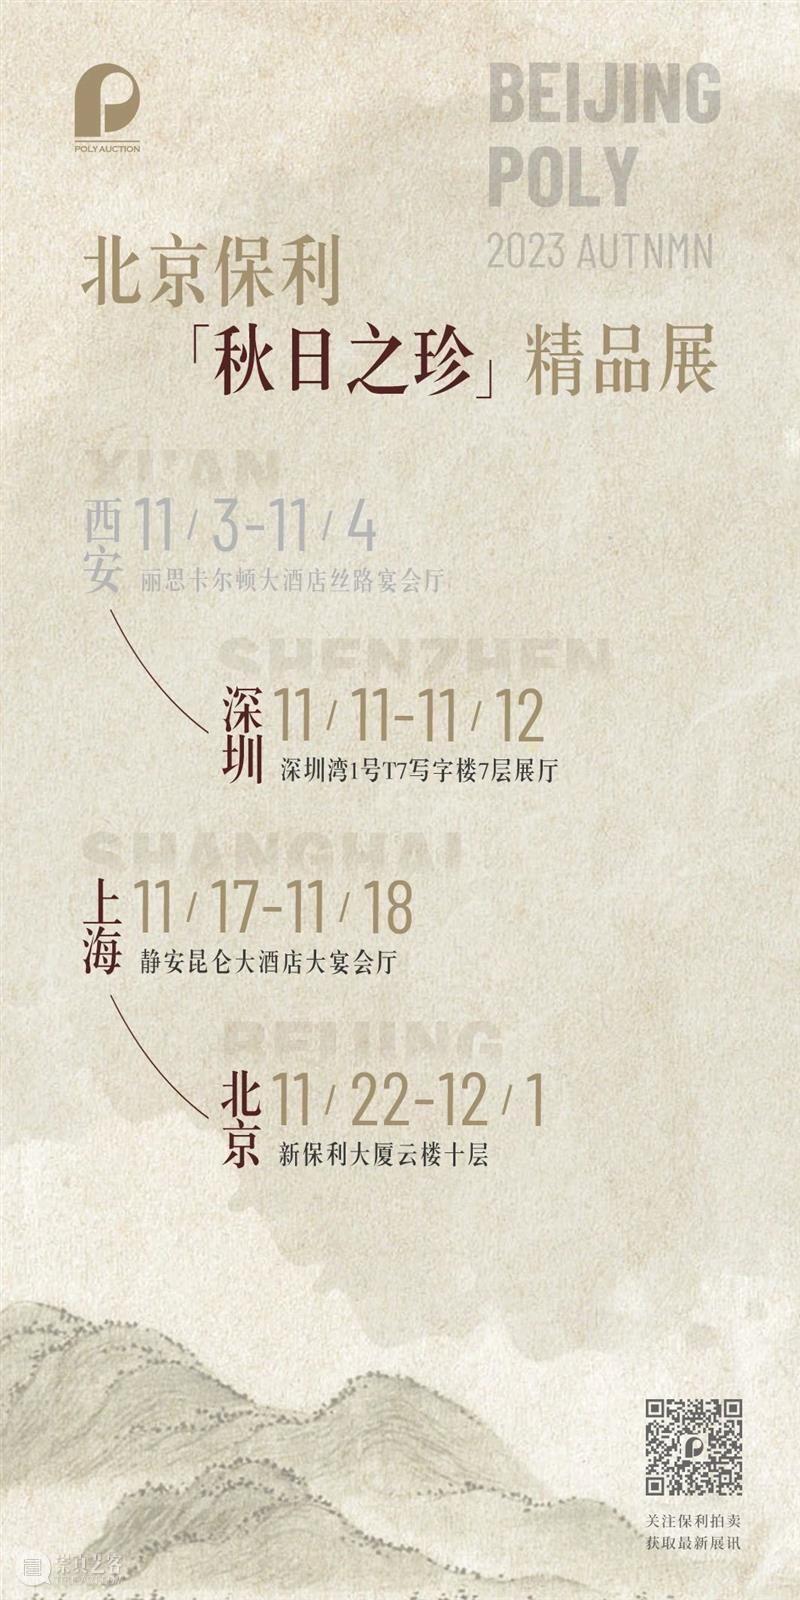 ​北京保利拍卖丨一生爱好是天然——张充和诞辰110周年纪念展即将开幕 崇真艺客